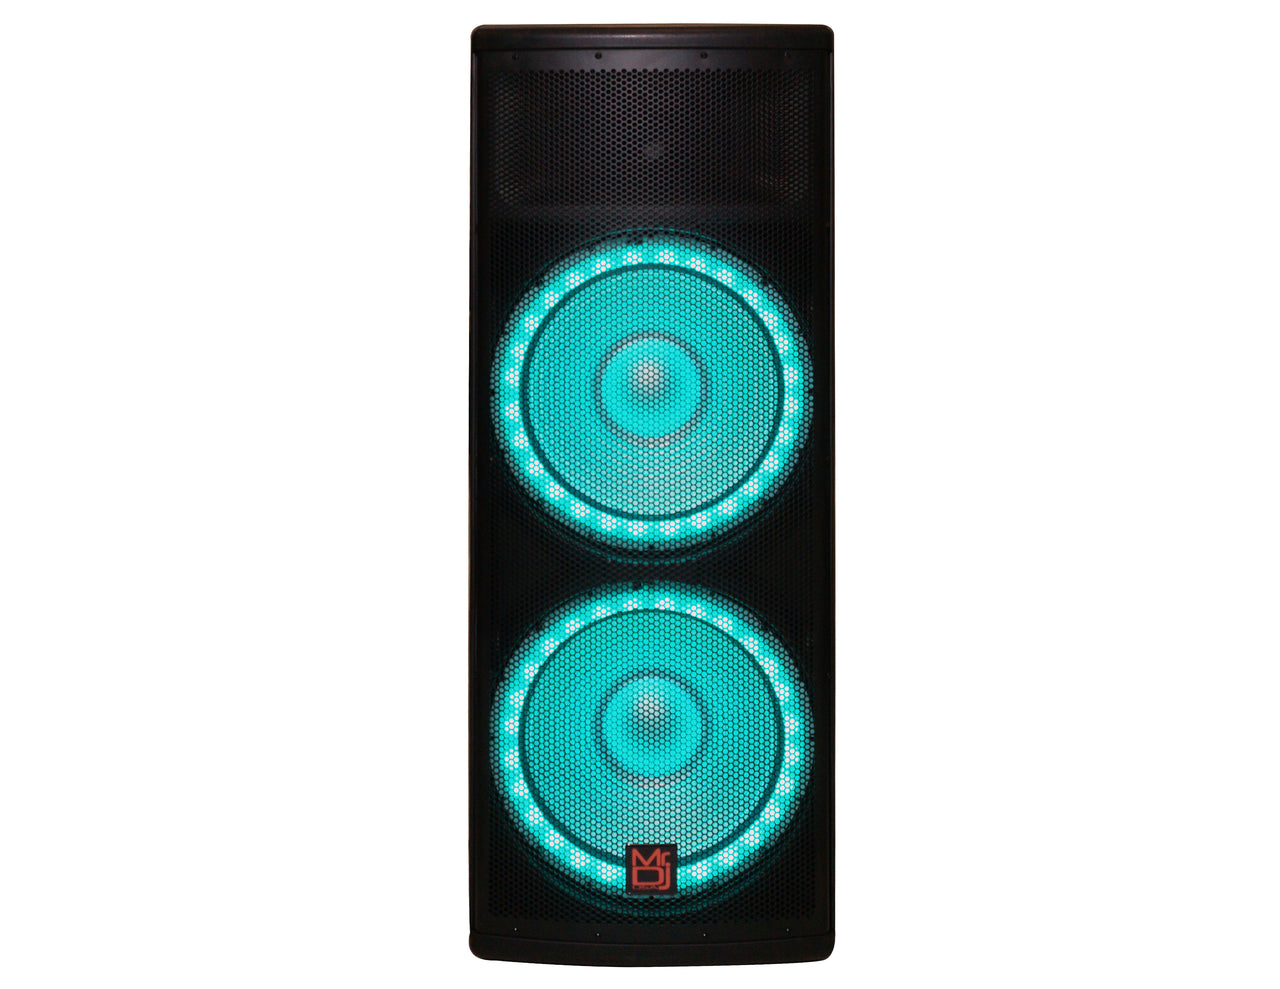 MR DJ PRO215LED Professional Dual 2x15" 5500W PA DJ Bluetooth Powered Speaker